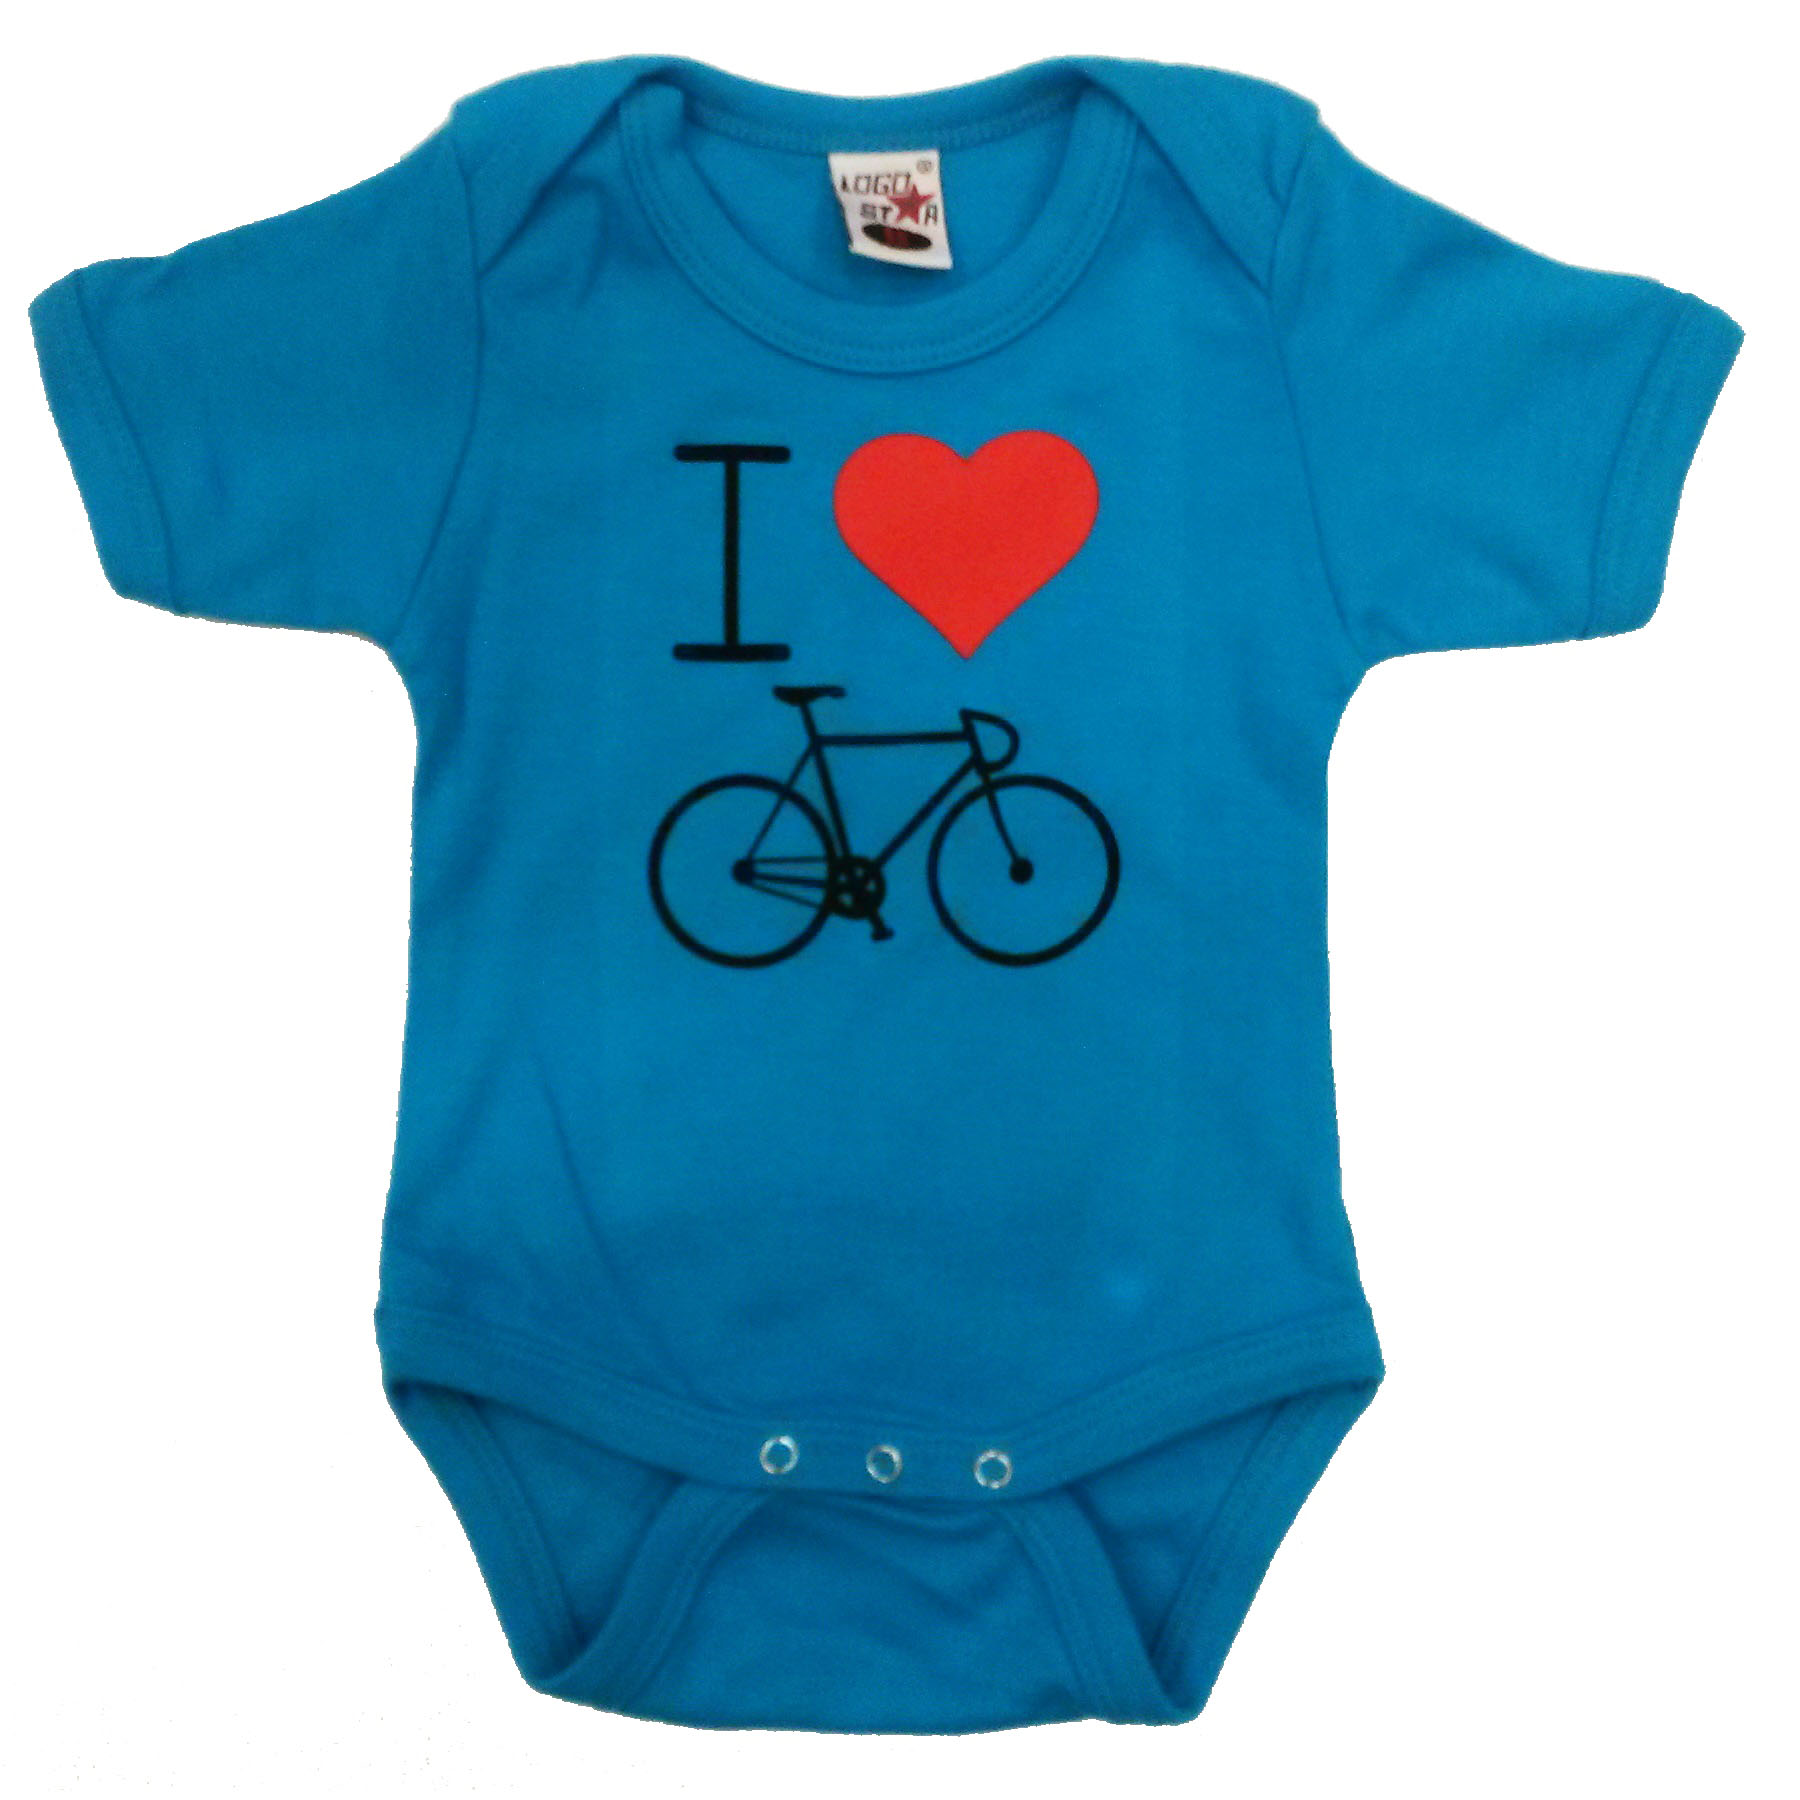 Cycle Gifts Babyromper Blauw Kaptein tweewielers